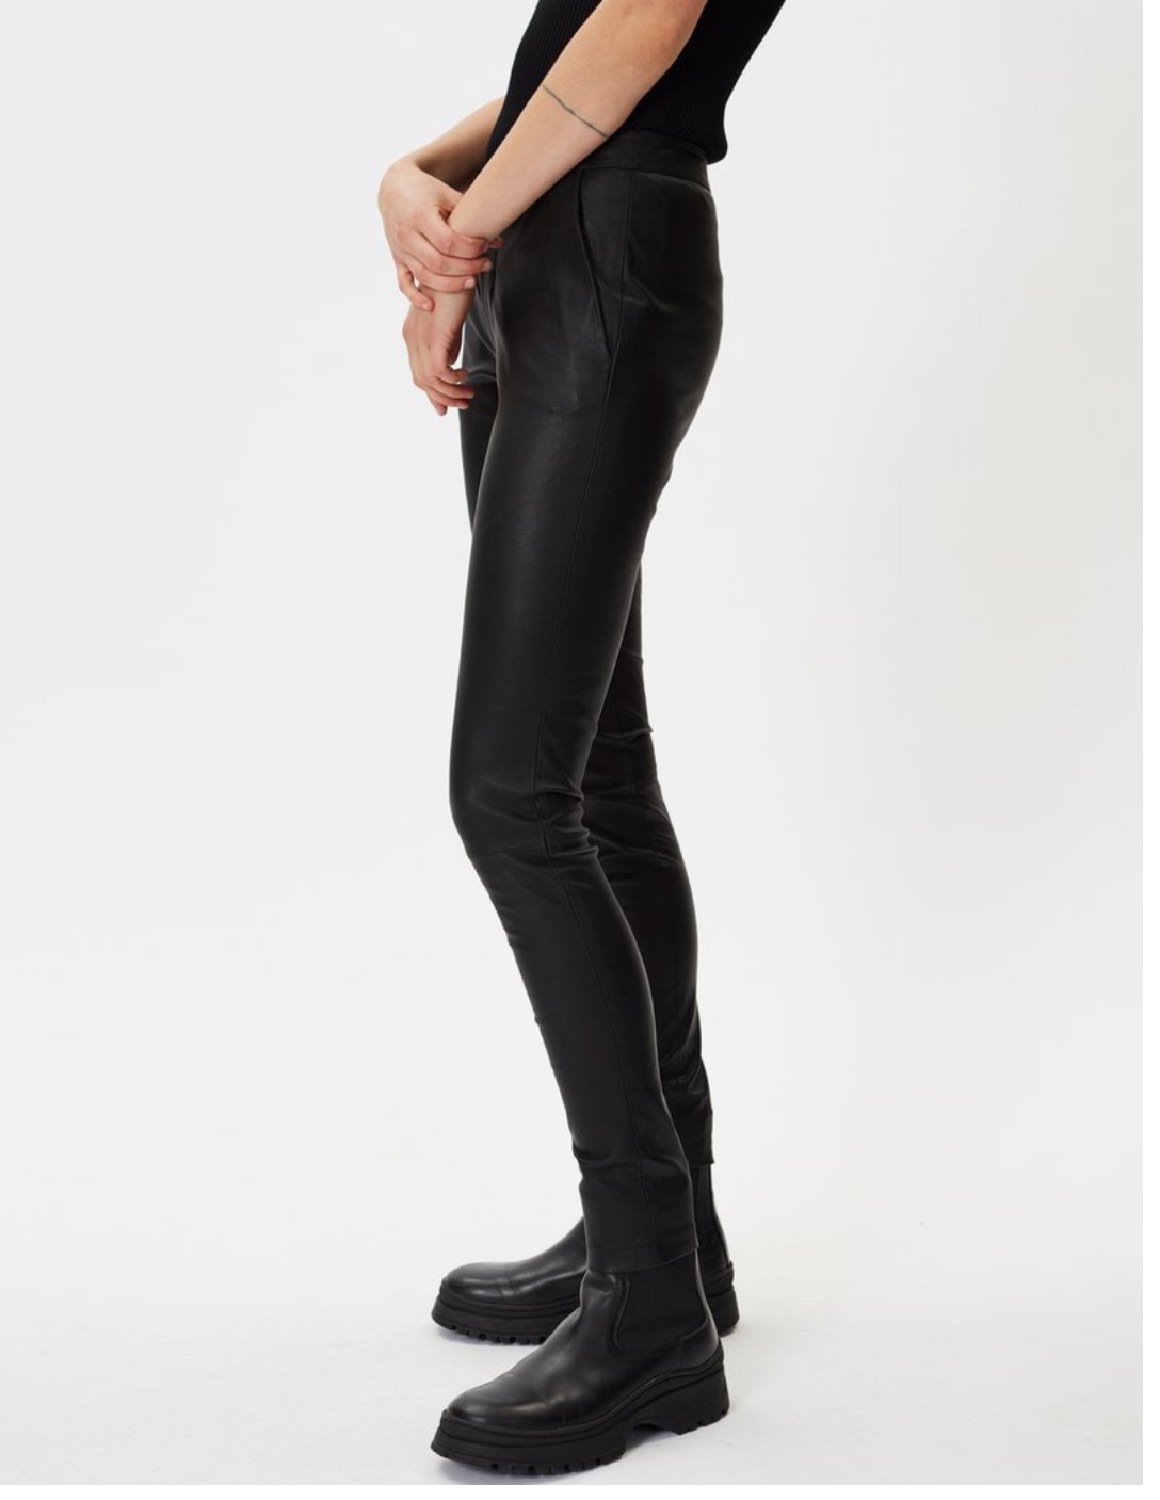 Zara Women Belted Faux Leather Pants Black 4387063  eBay